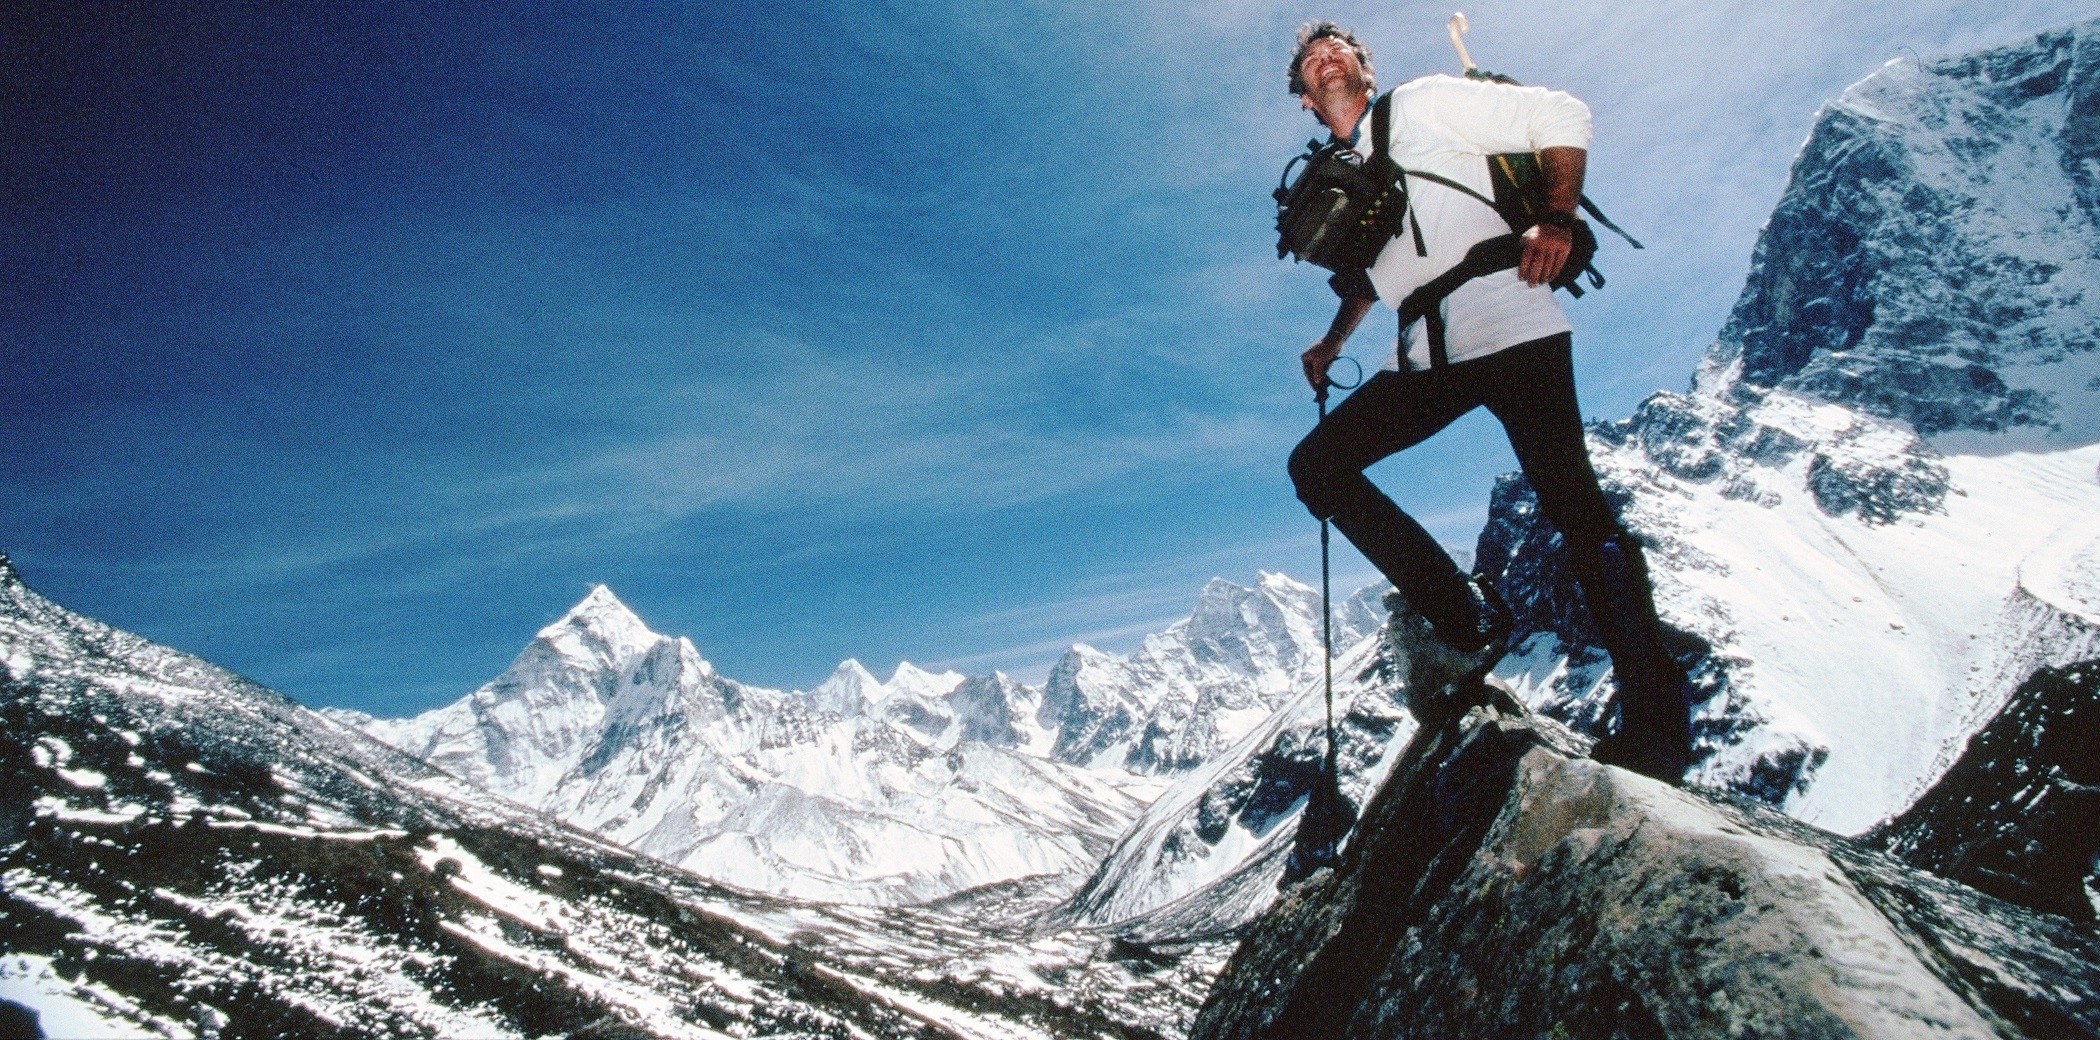 Тони Курц альпинист. Альпинист 2008. Альпинист на фоне гор. Альпинист звезды. Видите третьего альпиниста старость